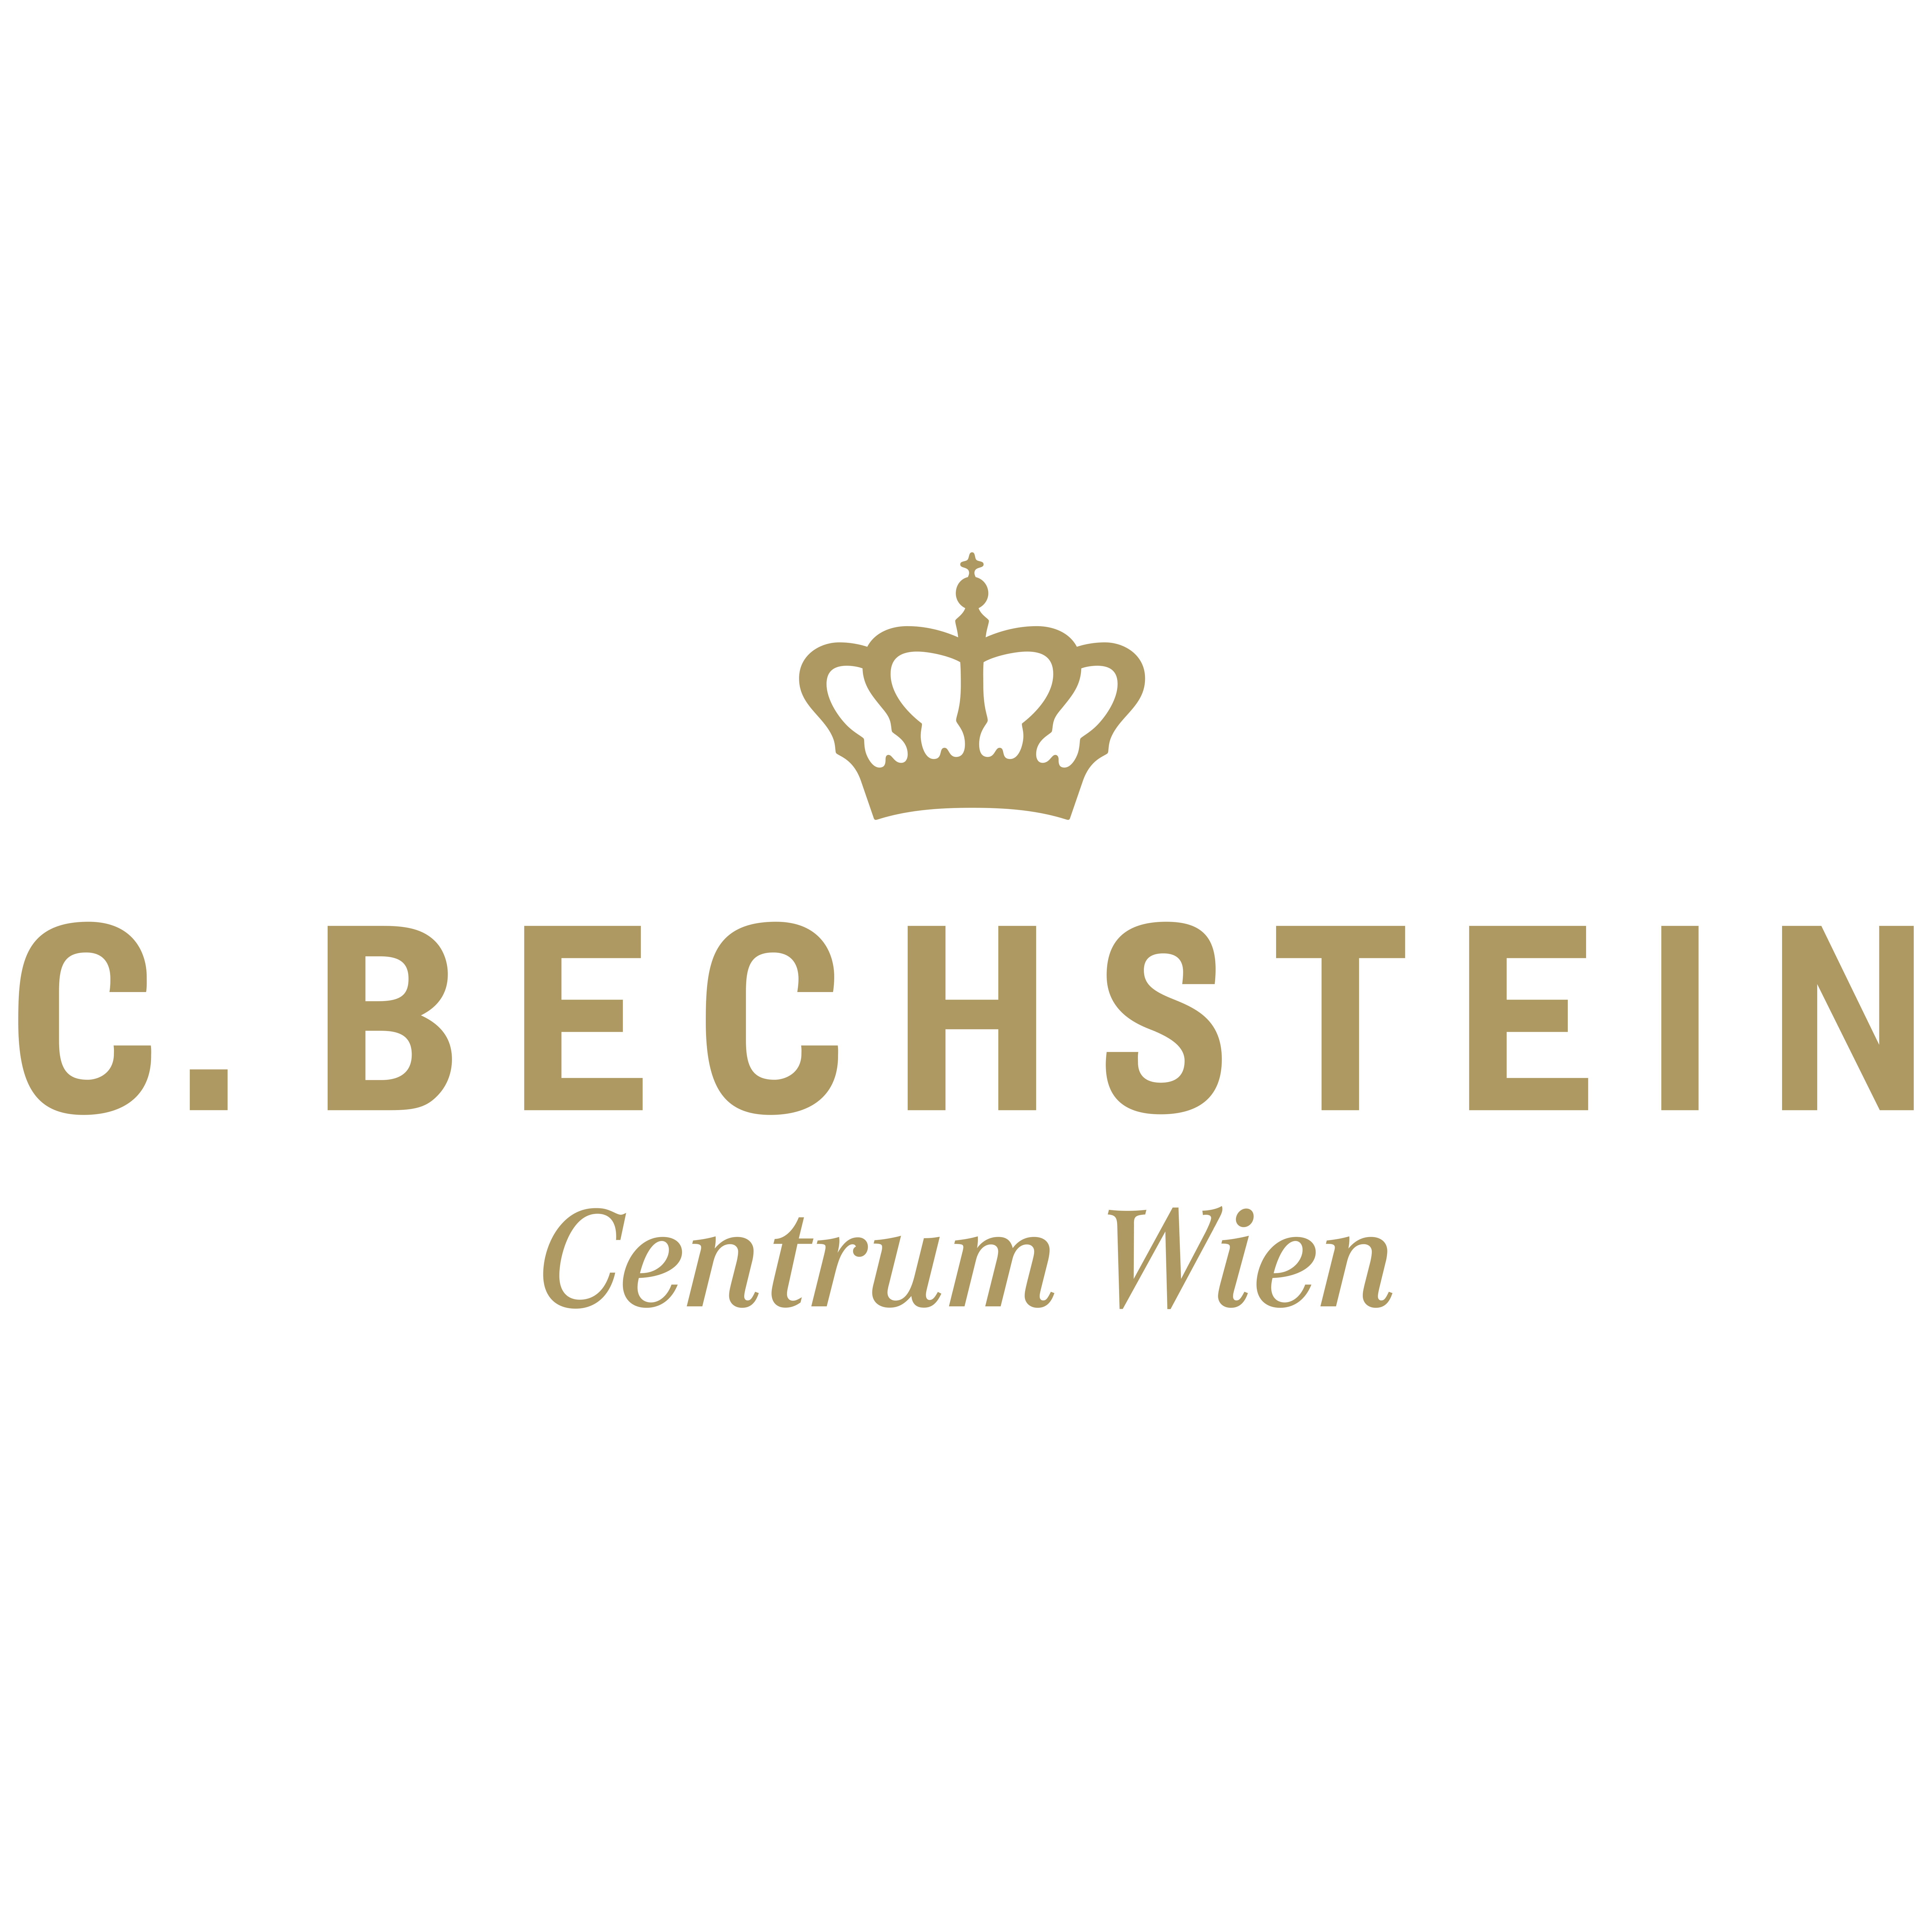 C. Bechstein Centrum Wien Logo